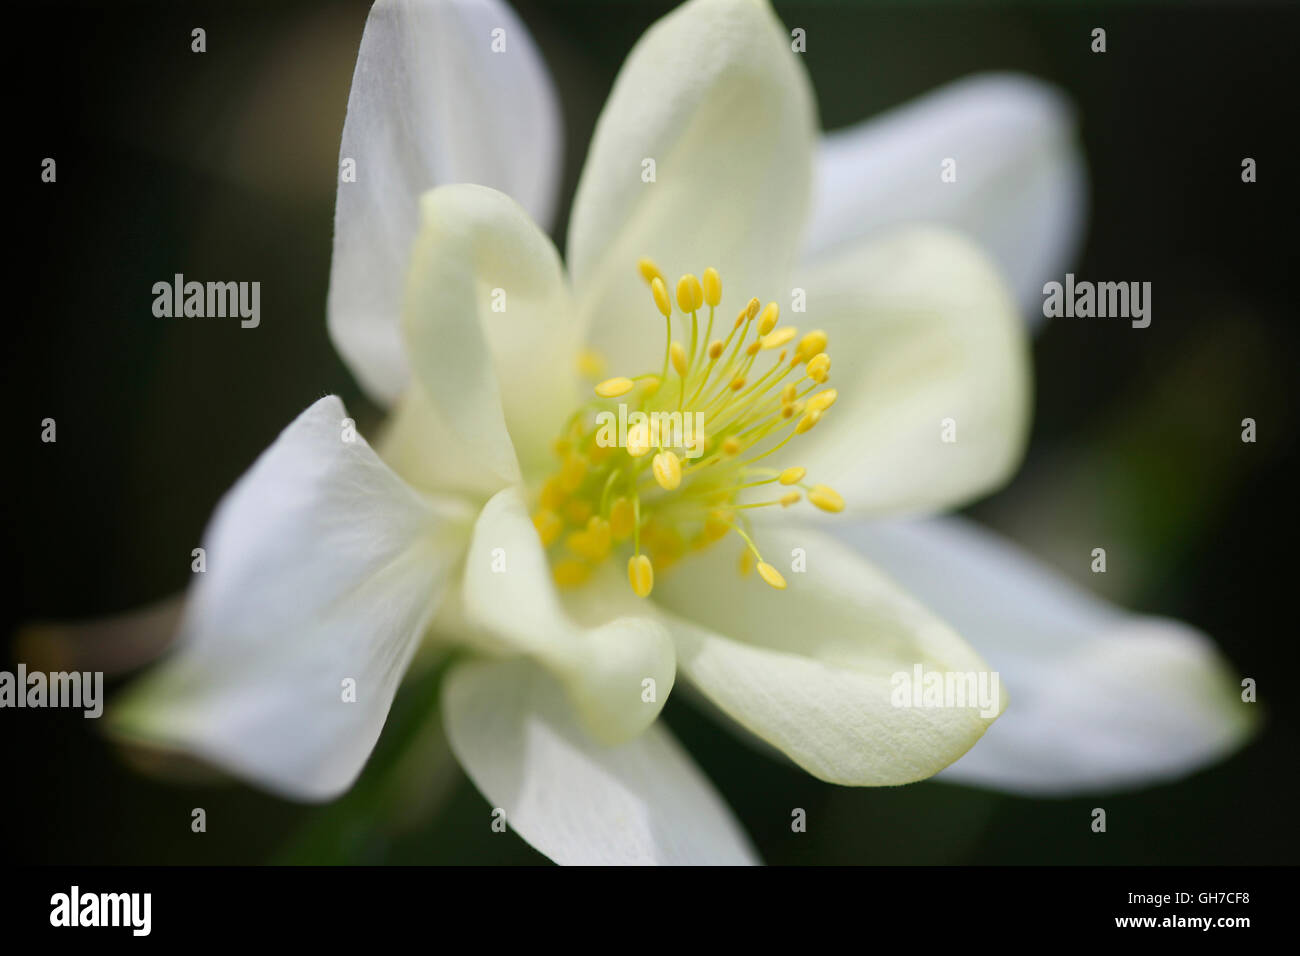 L'éclat d'été aquilegia blanche bloom avec le pollen des étamines riche Jane Ann Butler Photography JABP1549 Banque D'Images